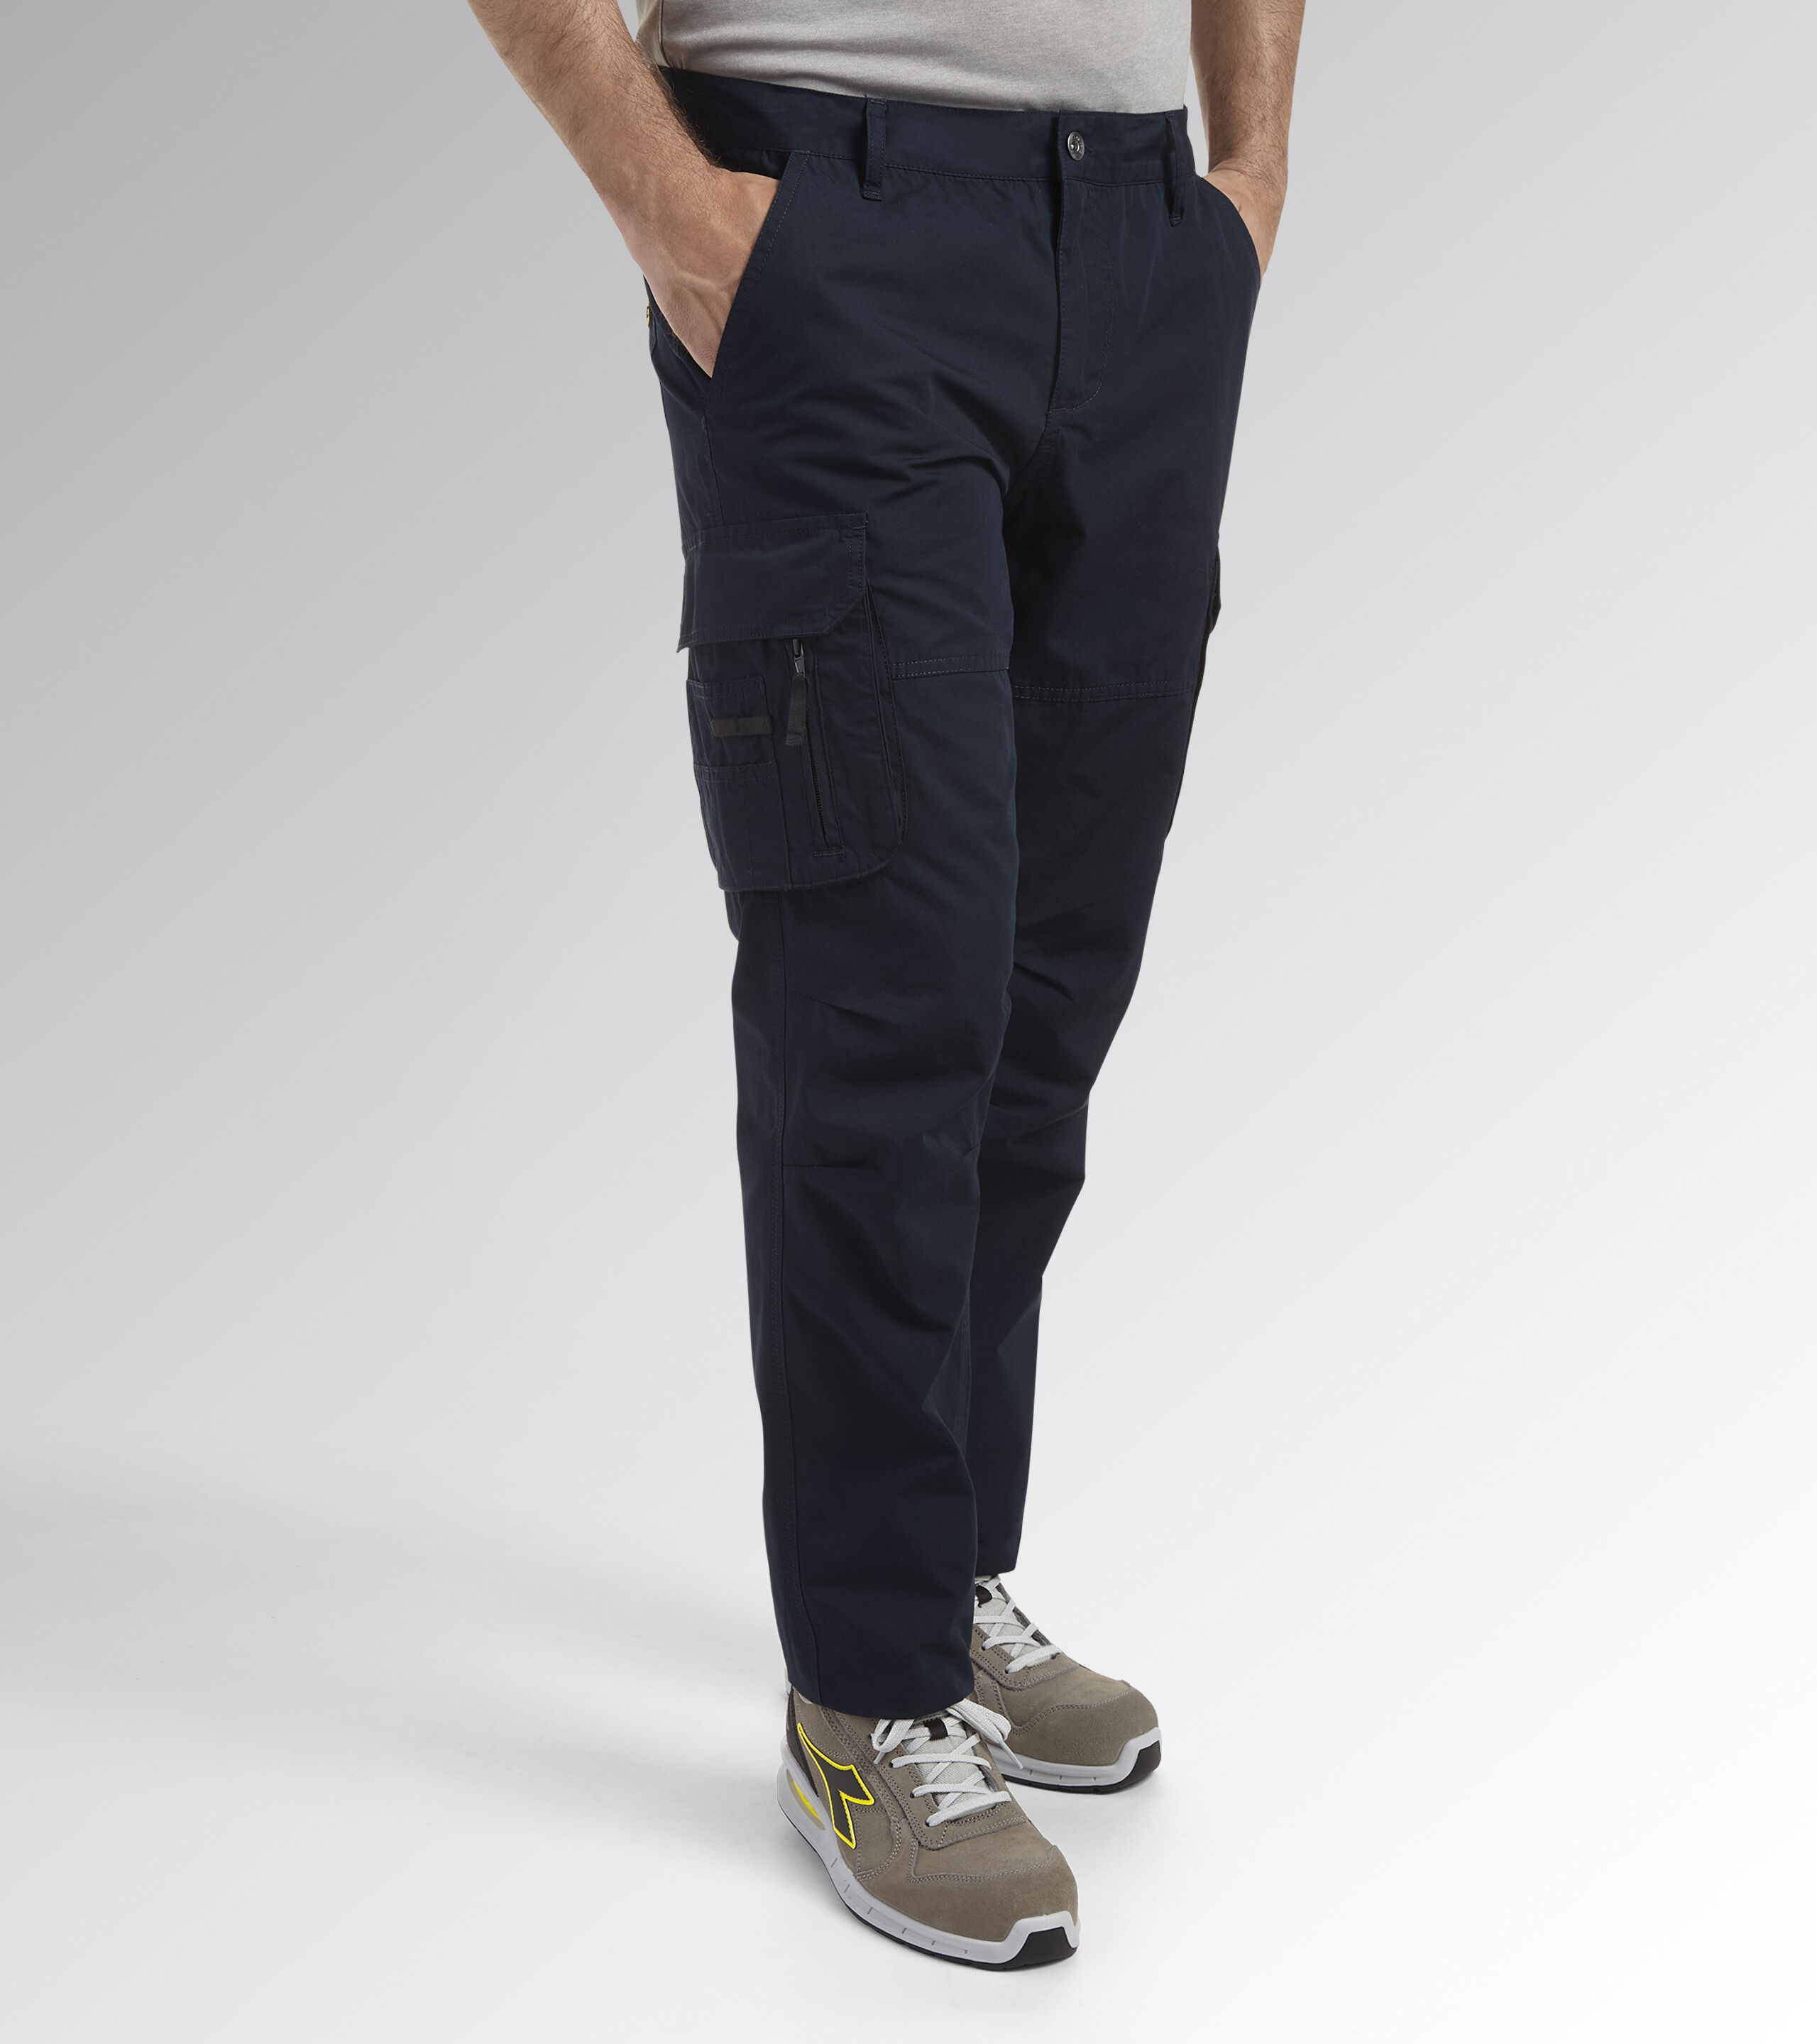 Buy t-base Men's Olive Regular Fit Cargo Pants for Men Online India